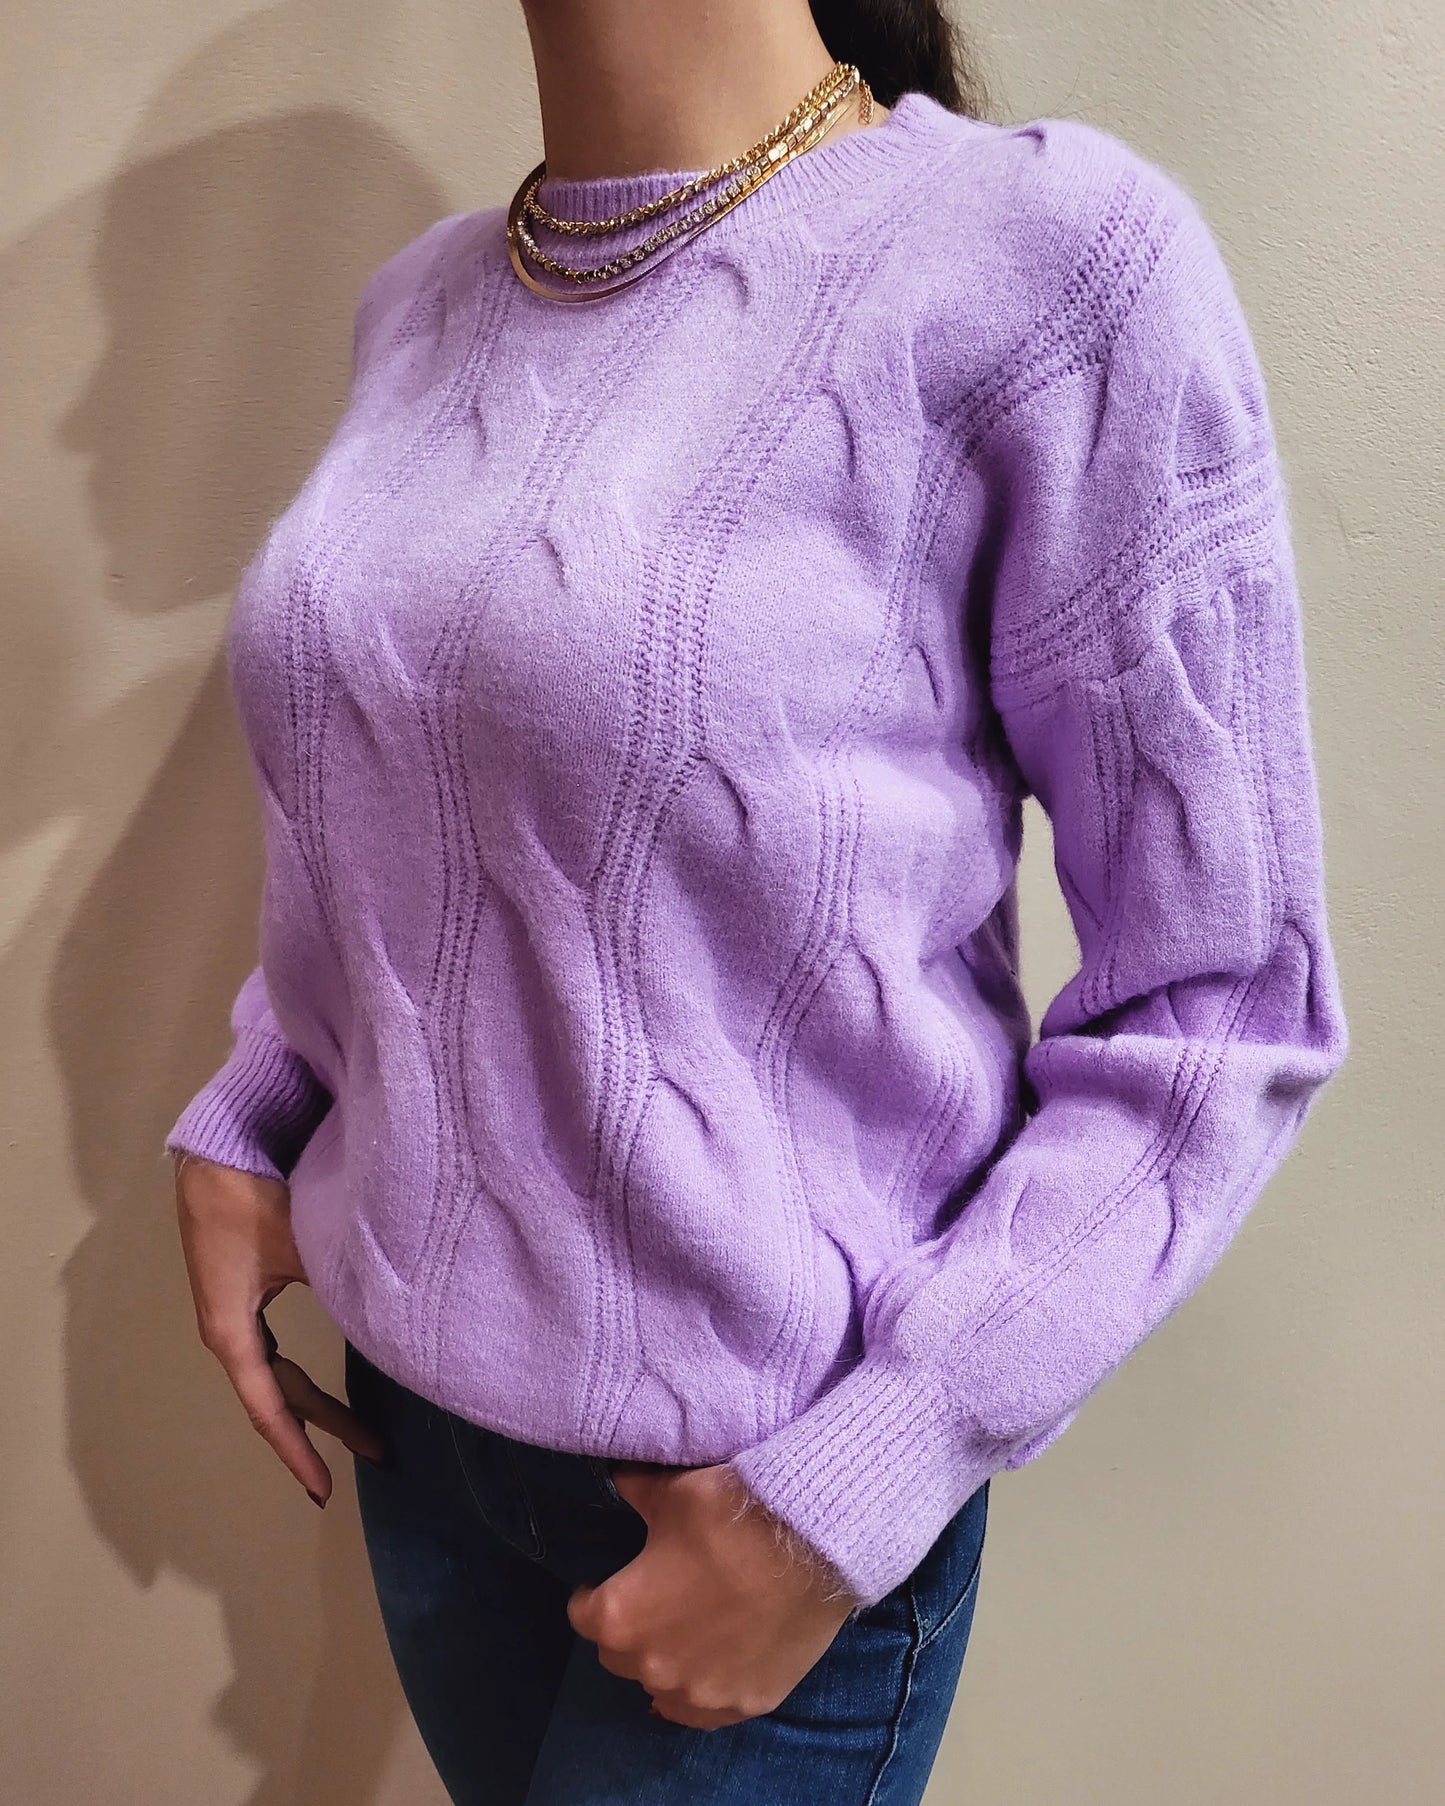 Purple knit jersey